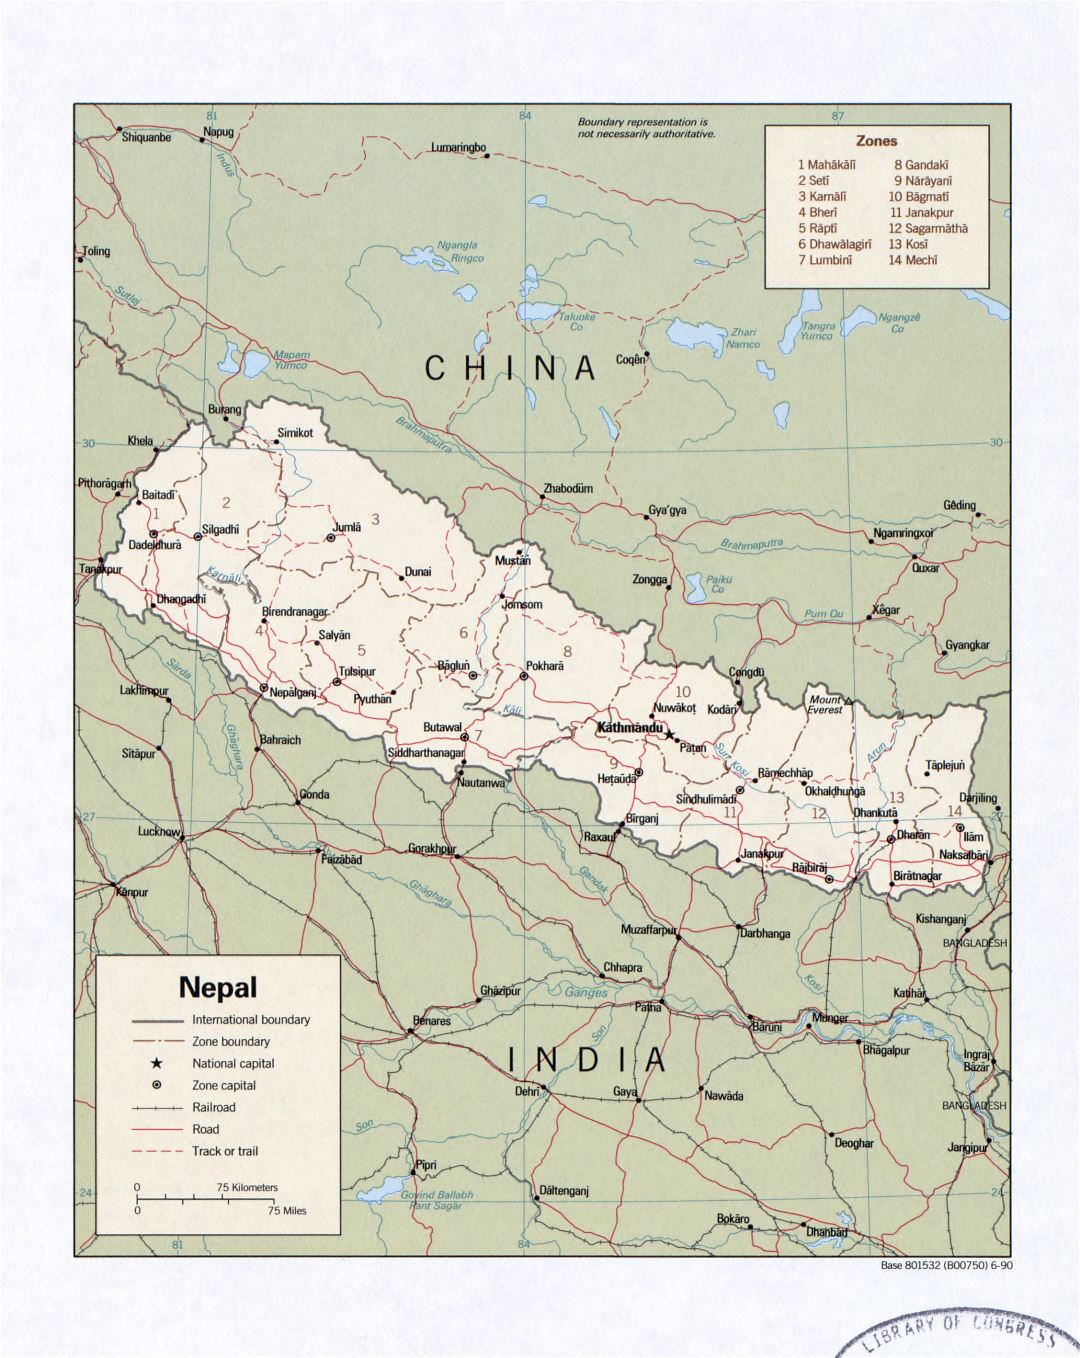 Grande detallado mapa político y administrativo de Nepal con carreteras, ferrocarriles y ciudades - 1990